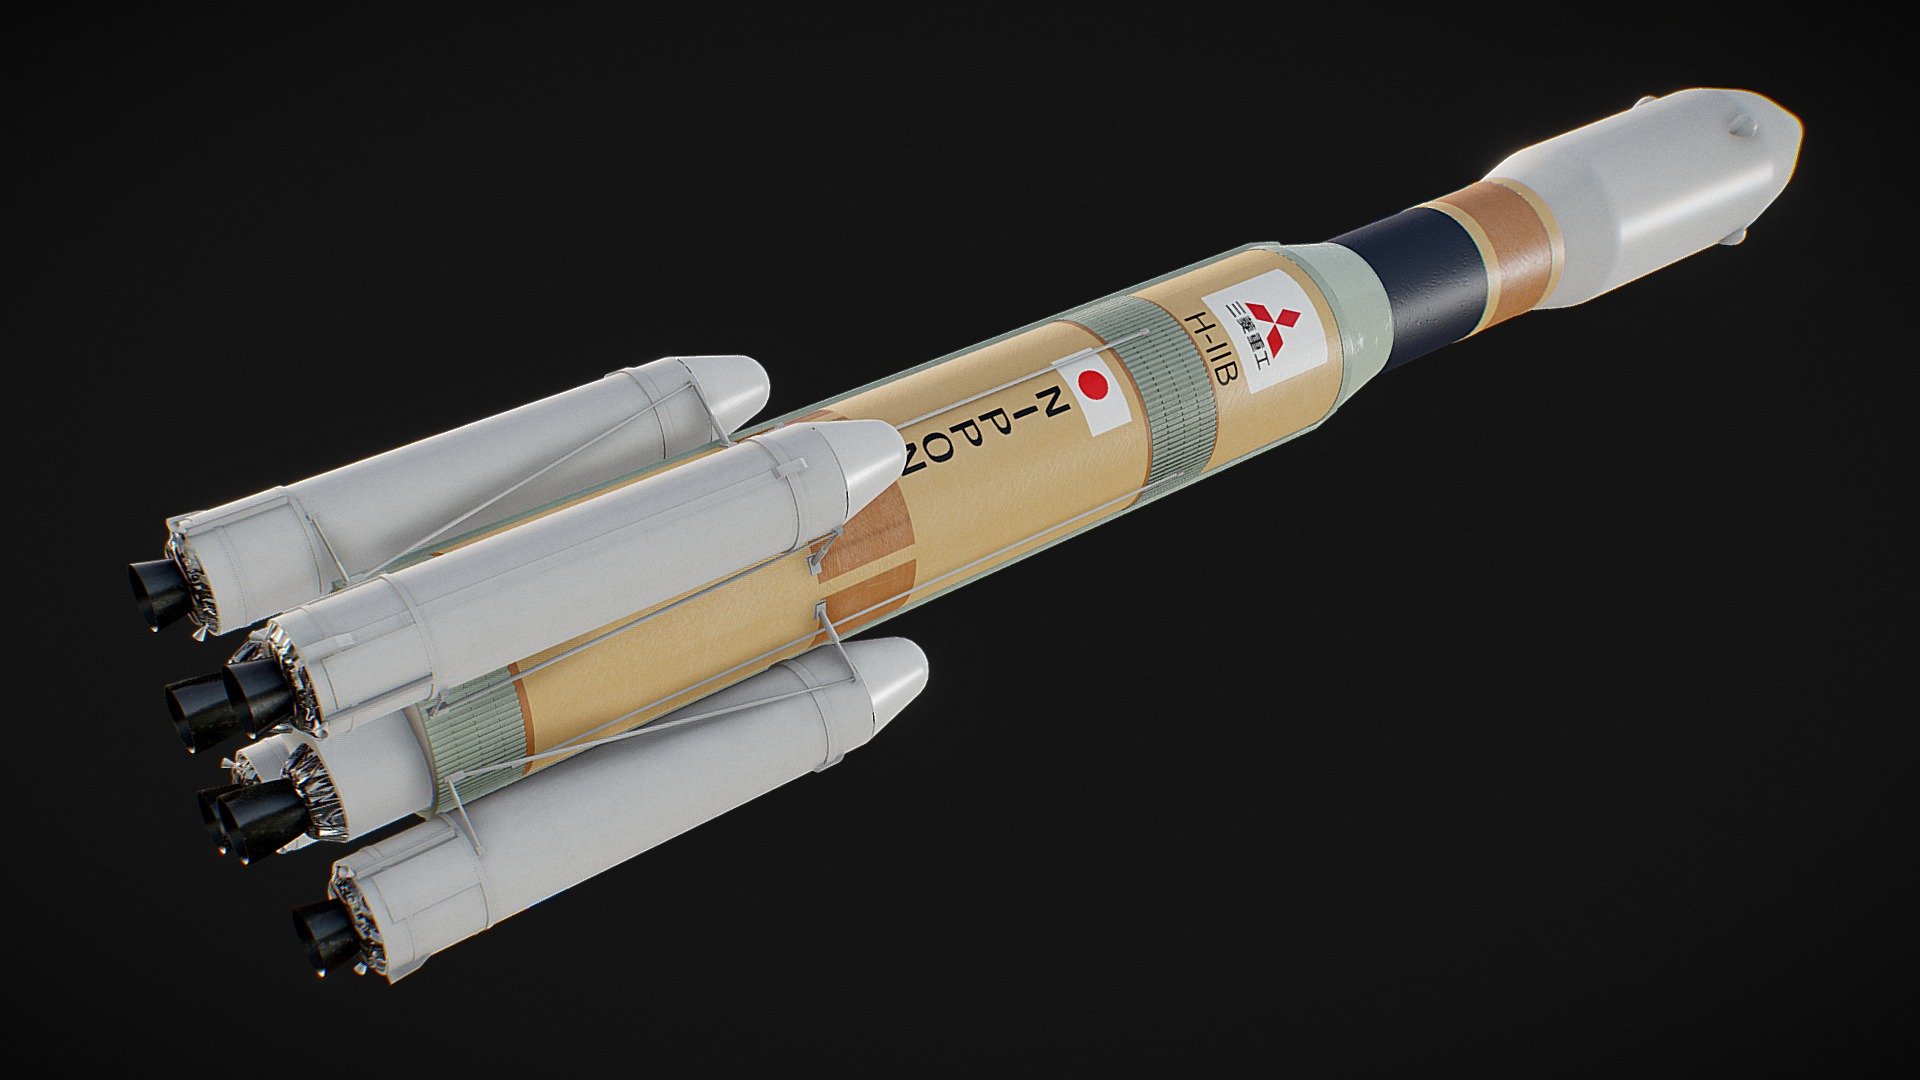 HII-B rocket - 3D model by TAIGA-ZOE 3d model